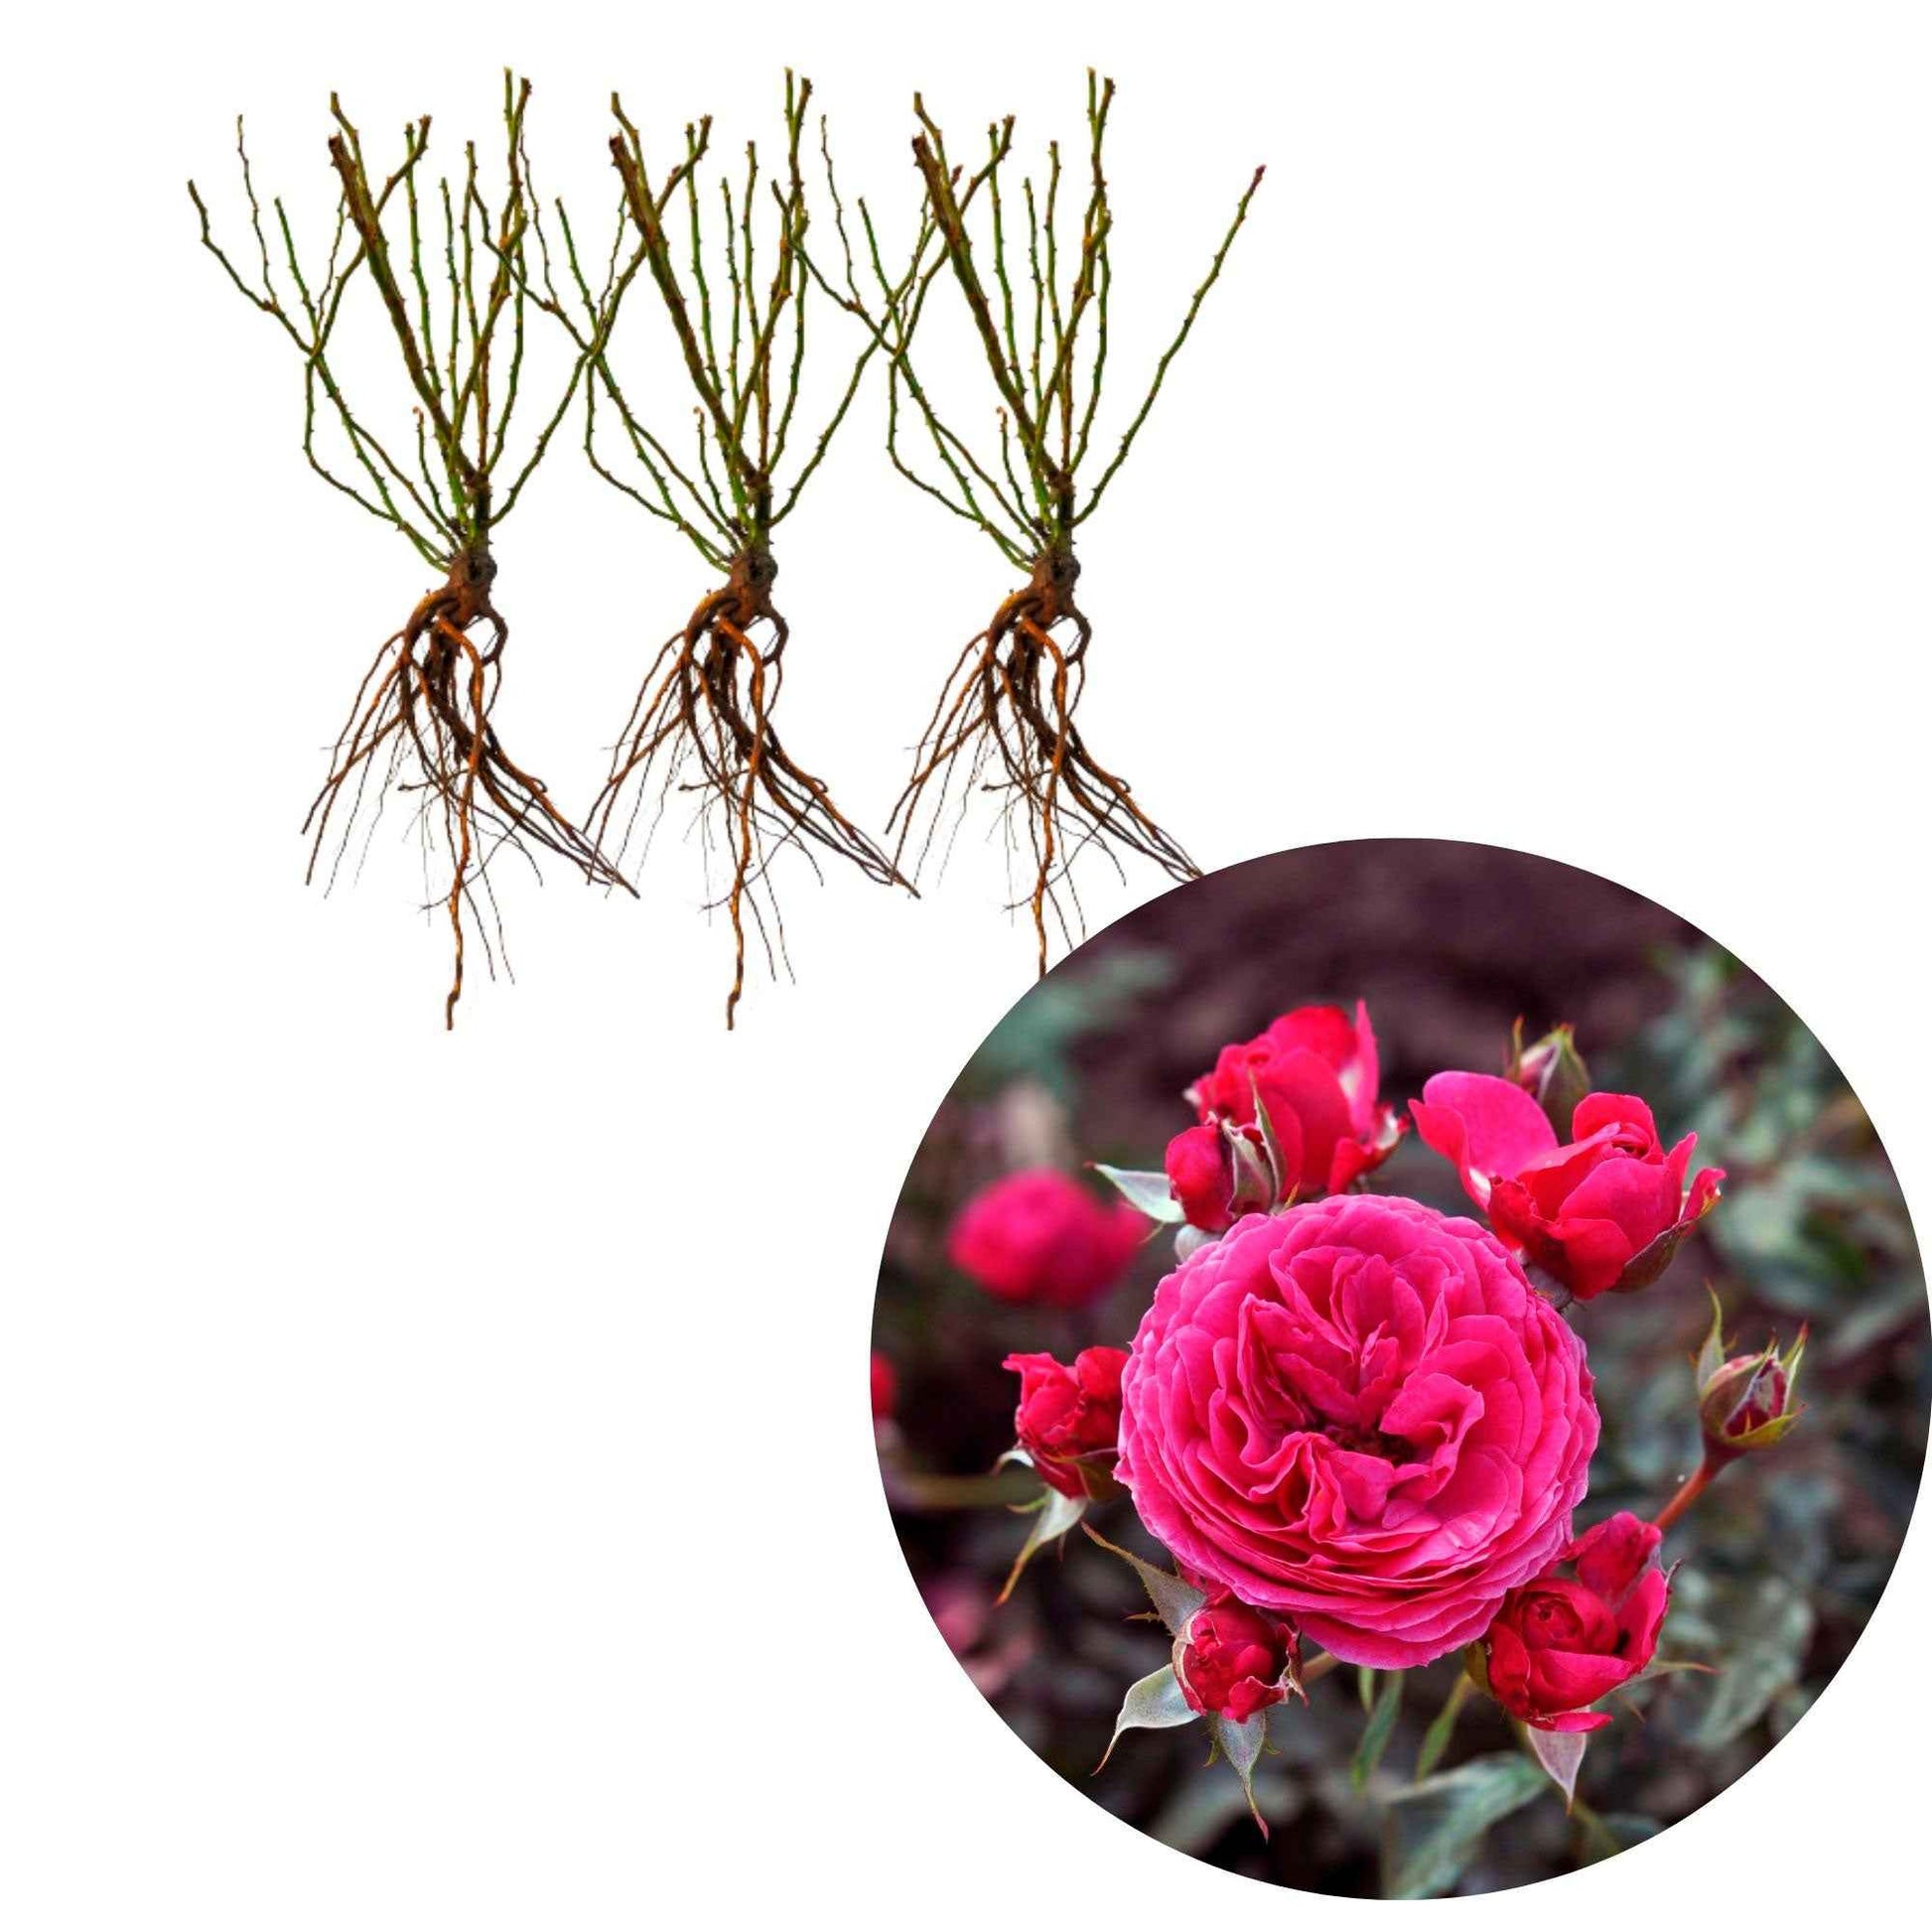 3x Roses Rosa 'Dolce'® Rose  - Plants à racines nues - Plantes d'extérieur